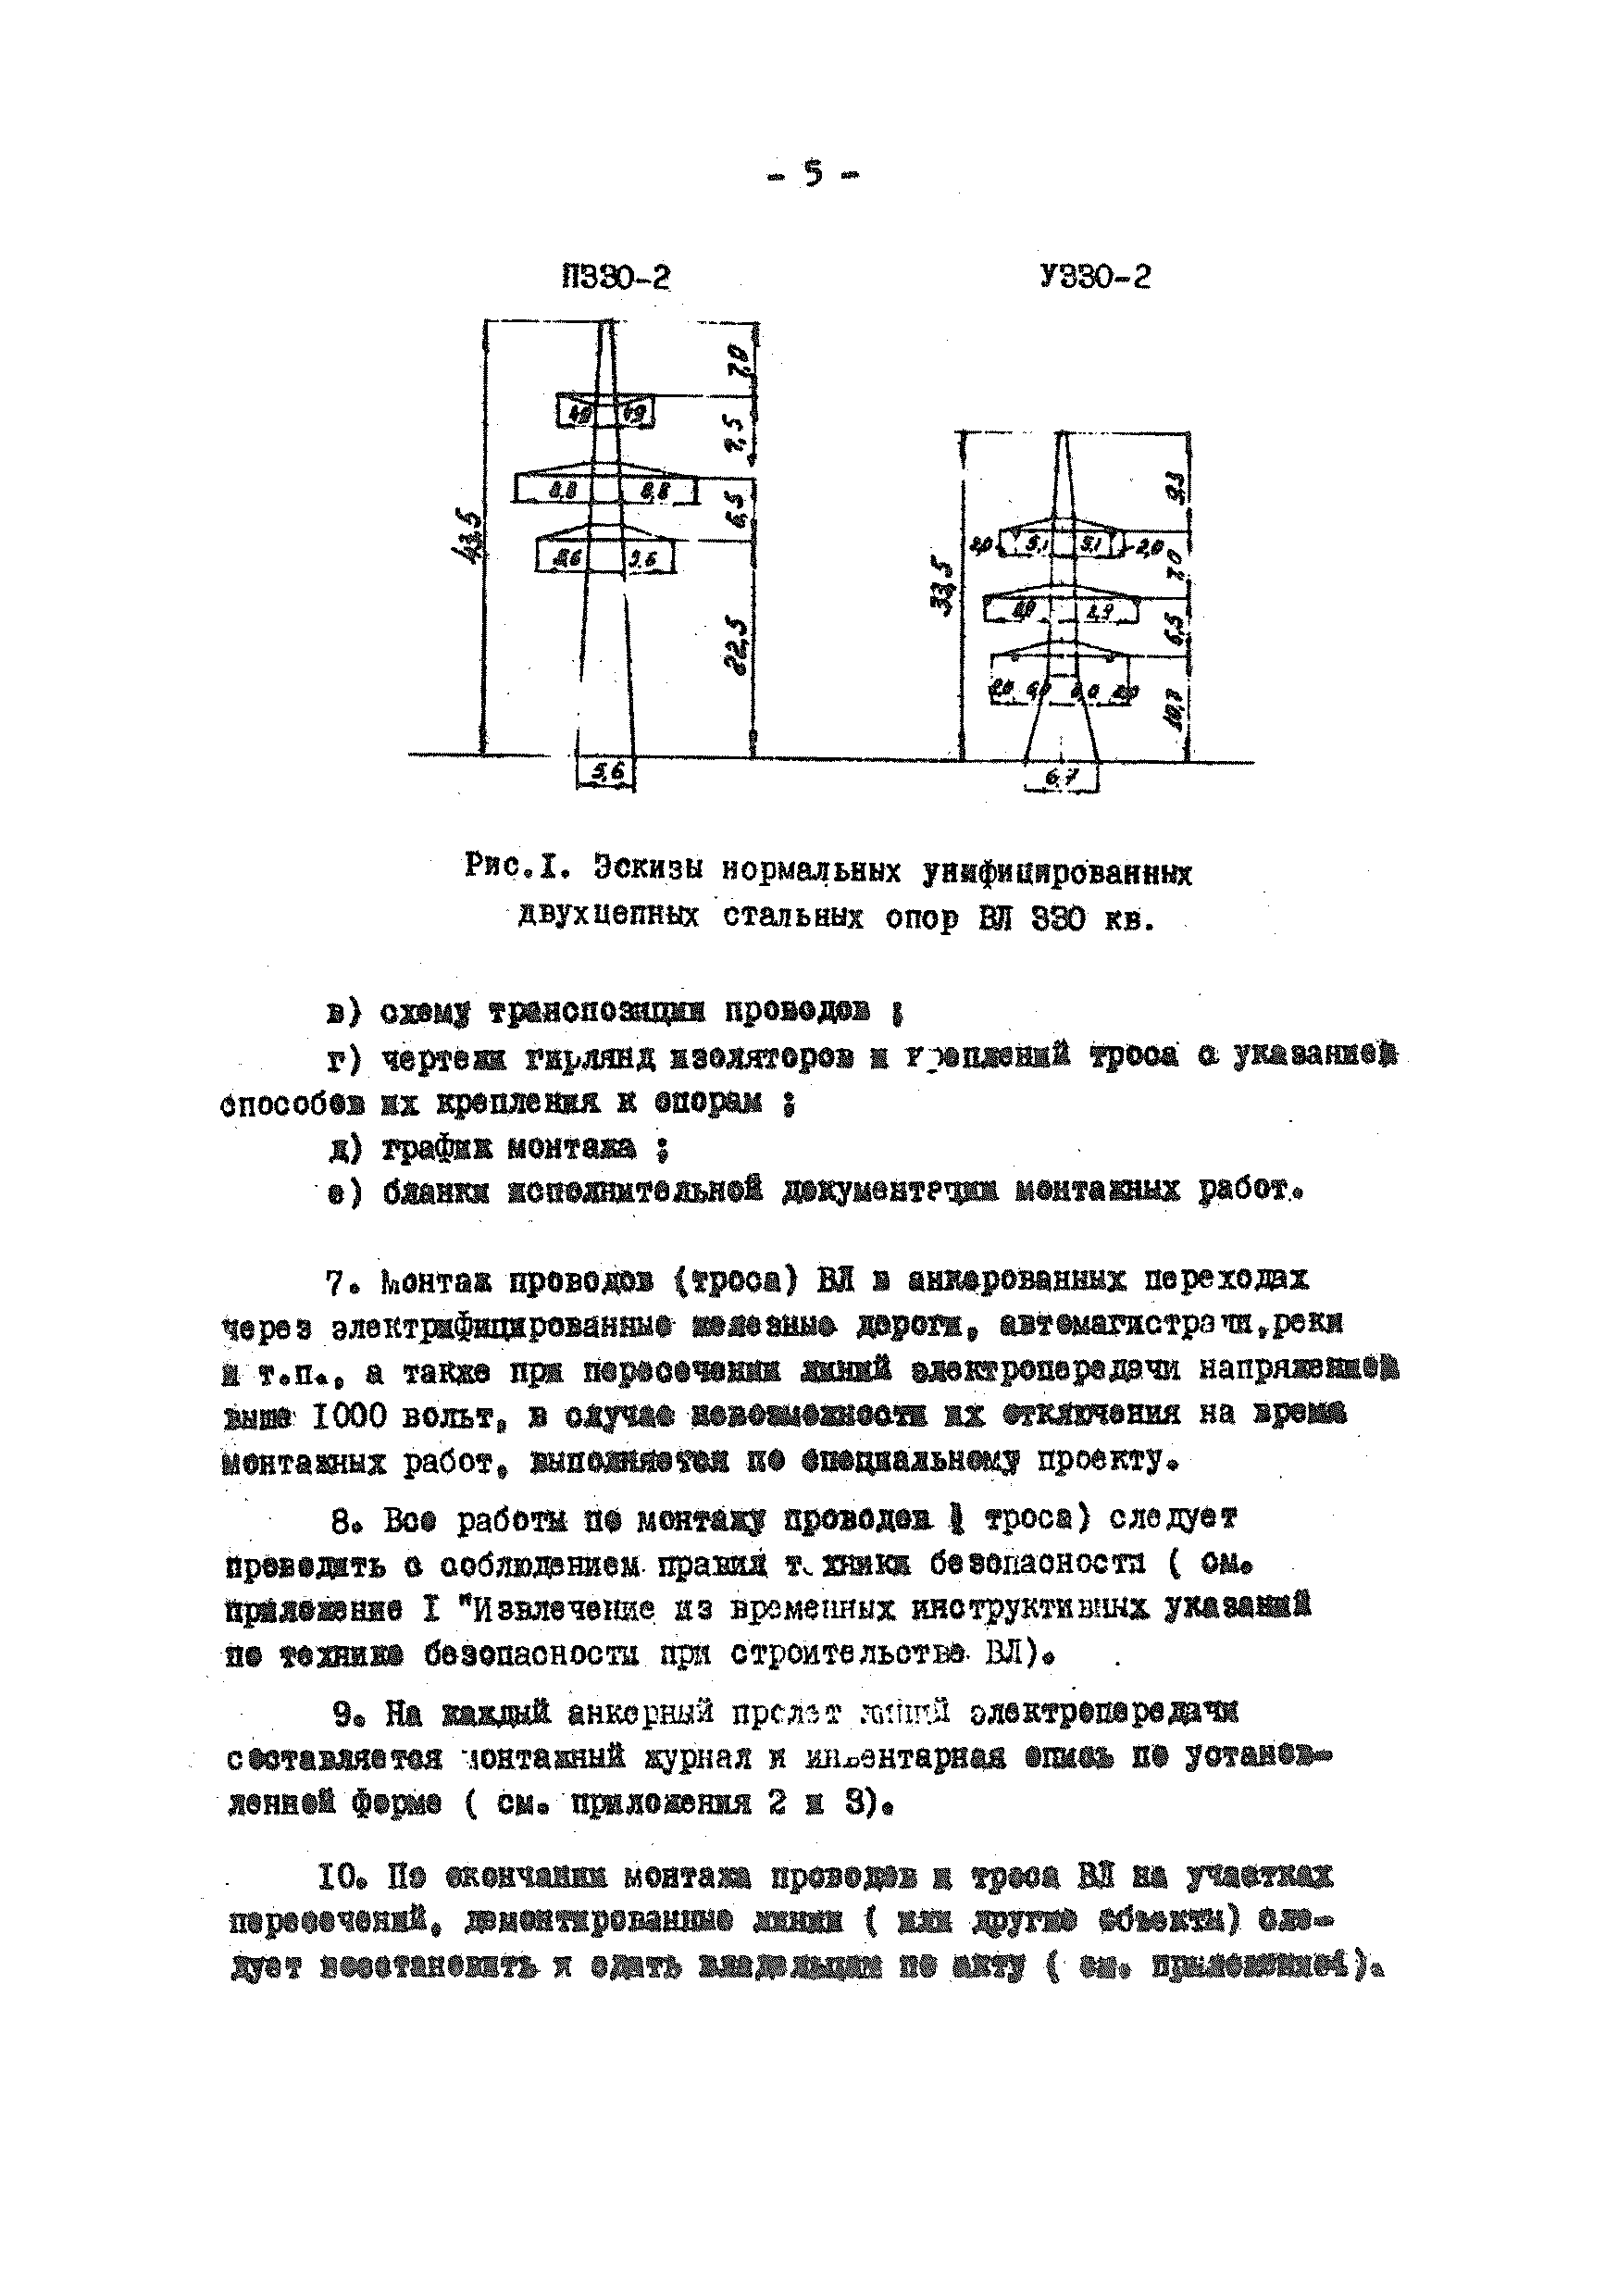 ТТК К-V-14-4